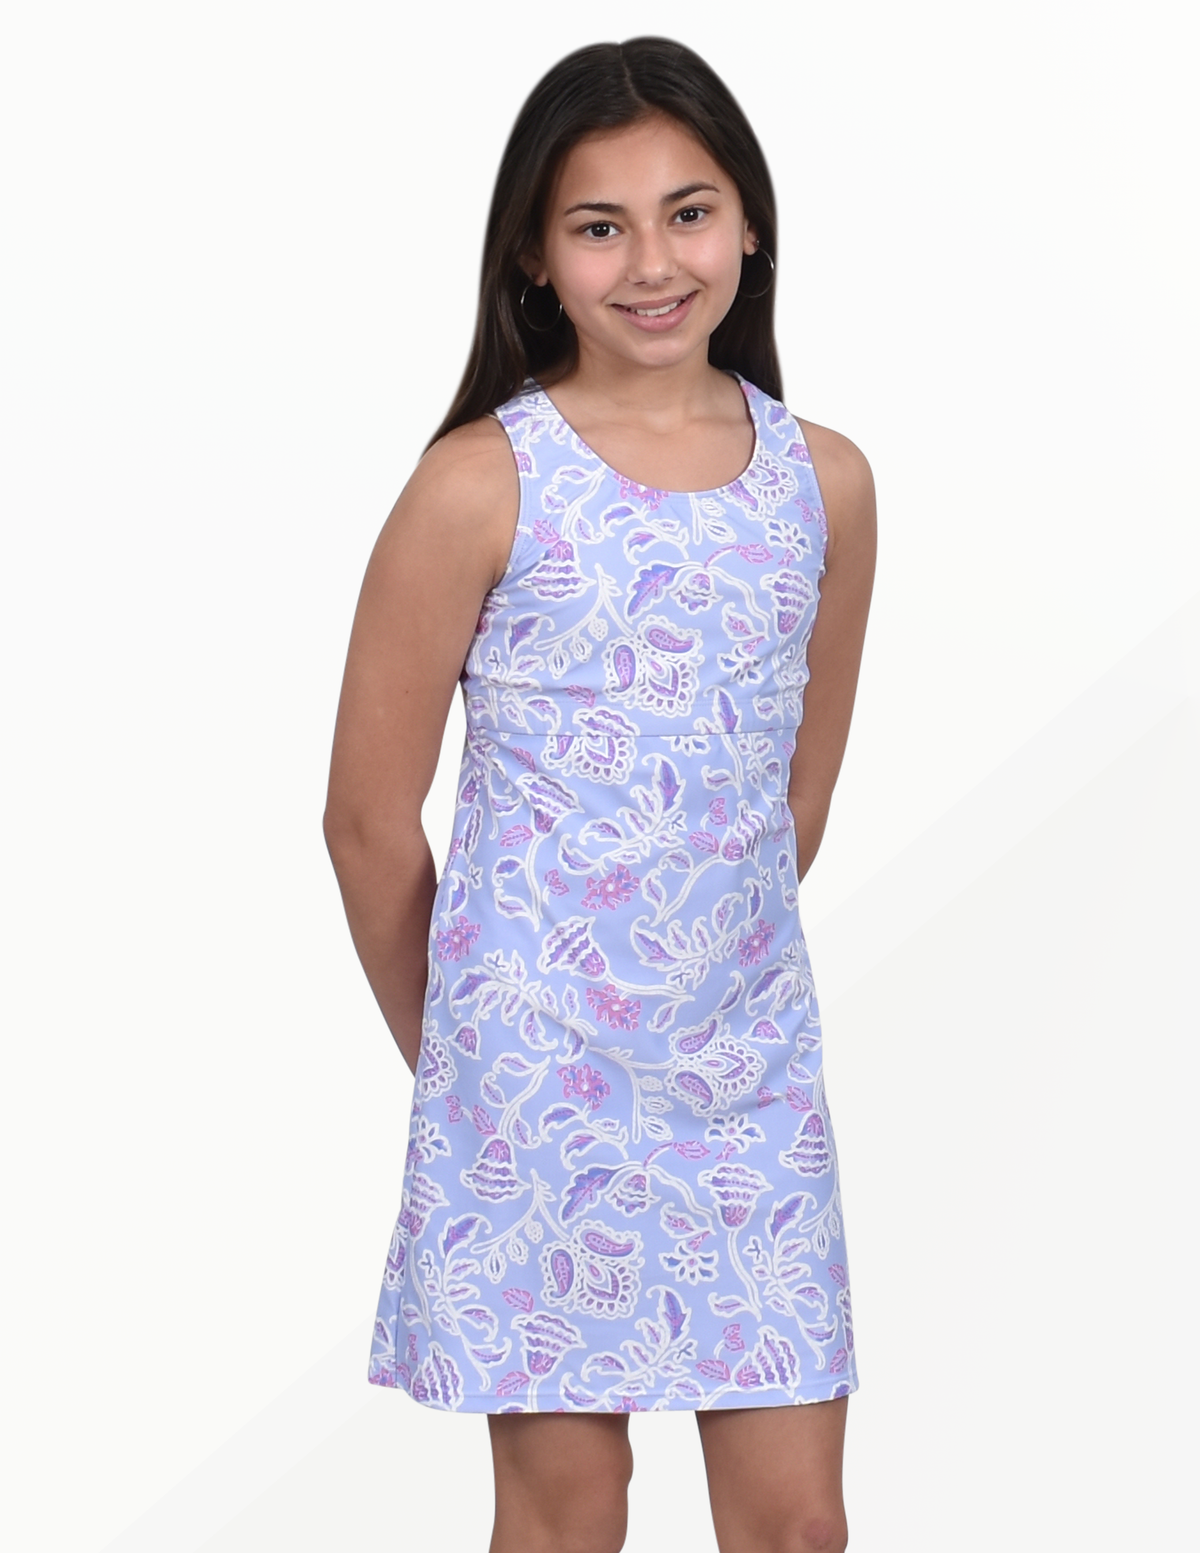 Little Girls Original Dress-Batik